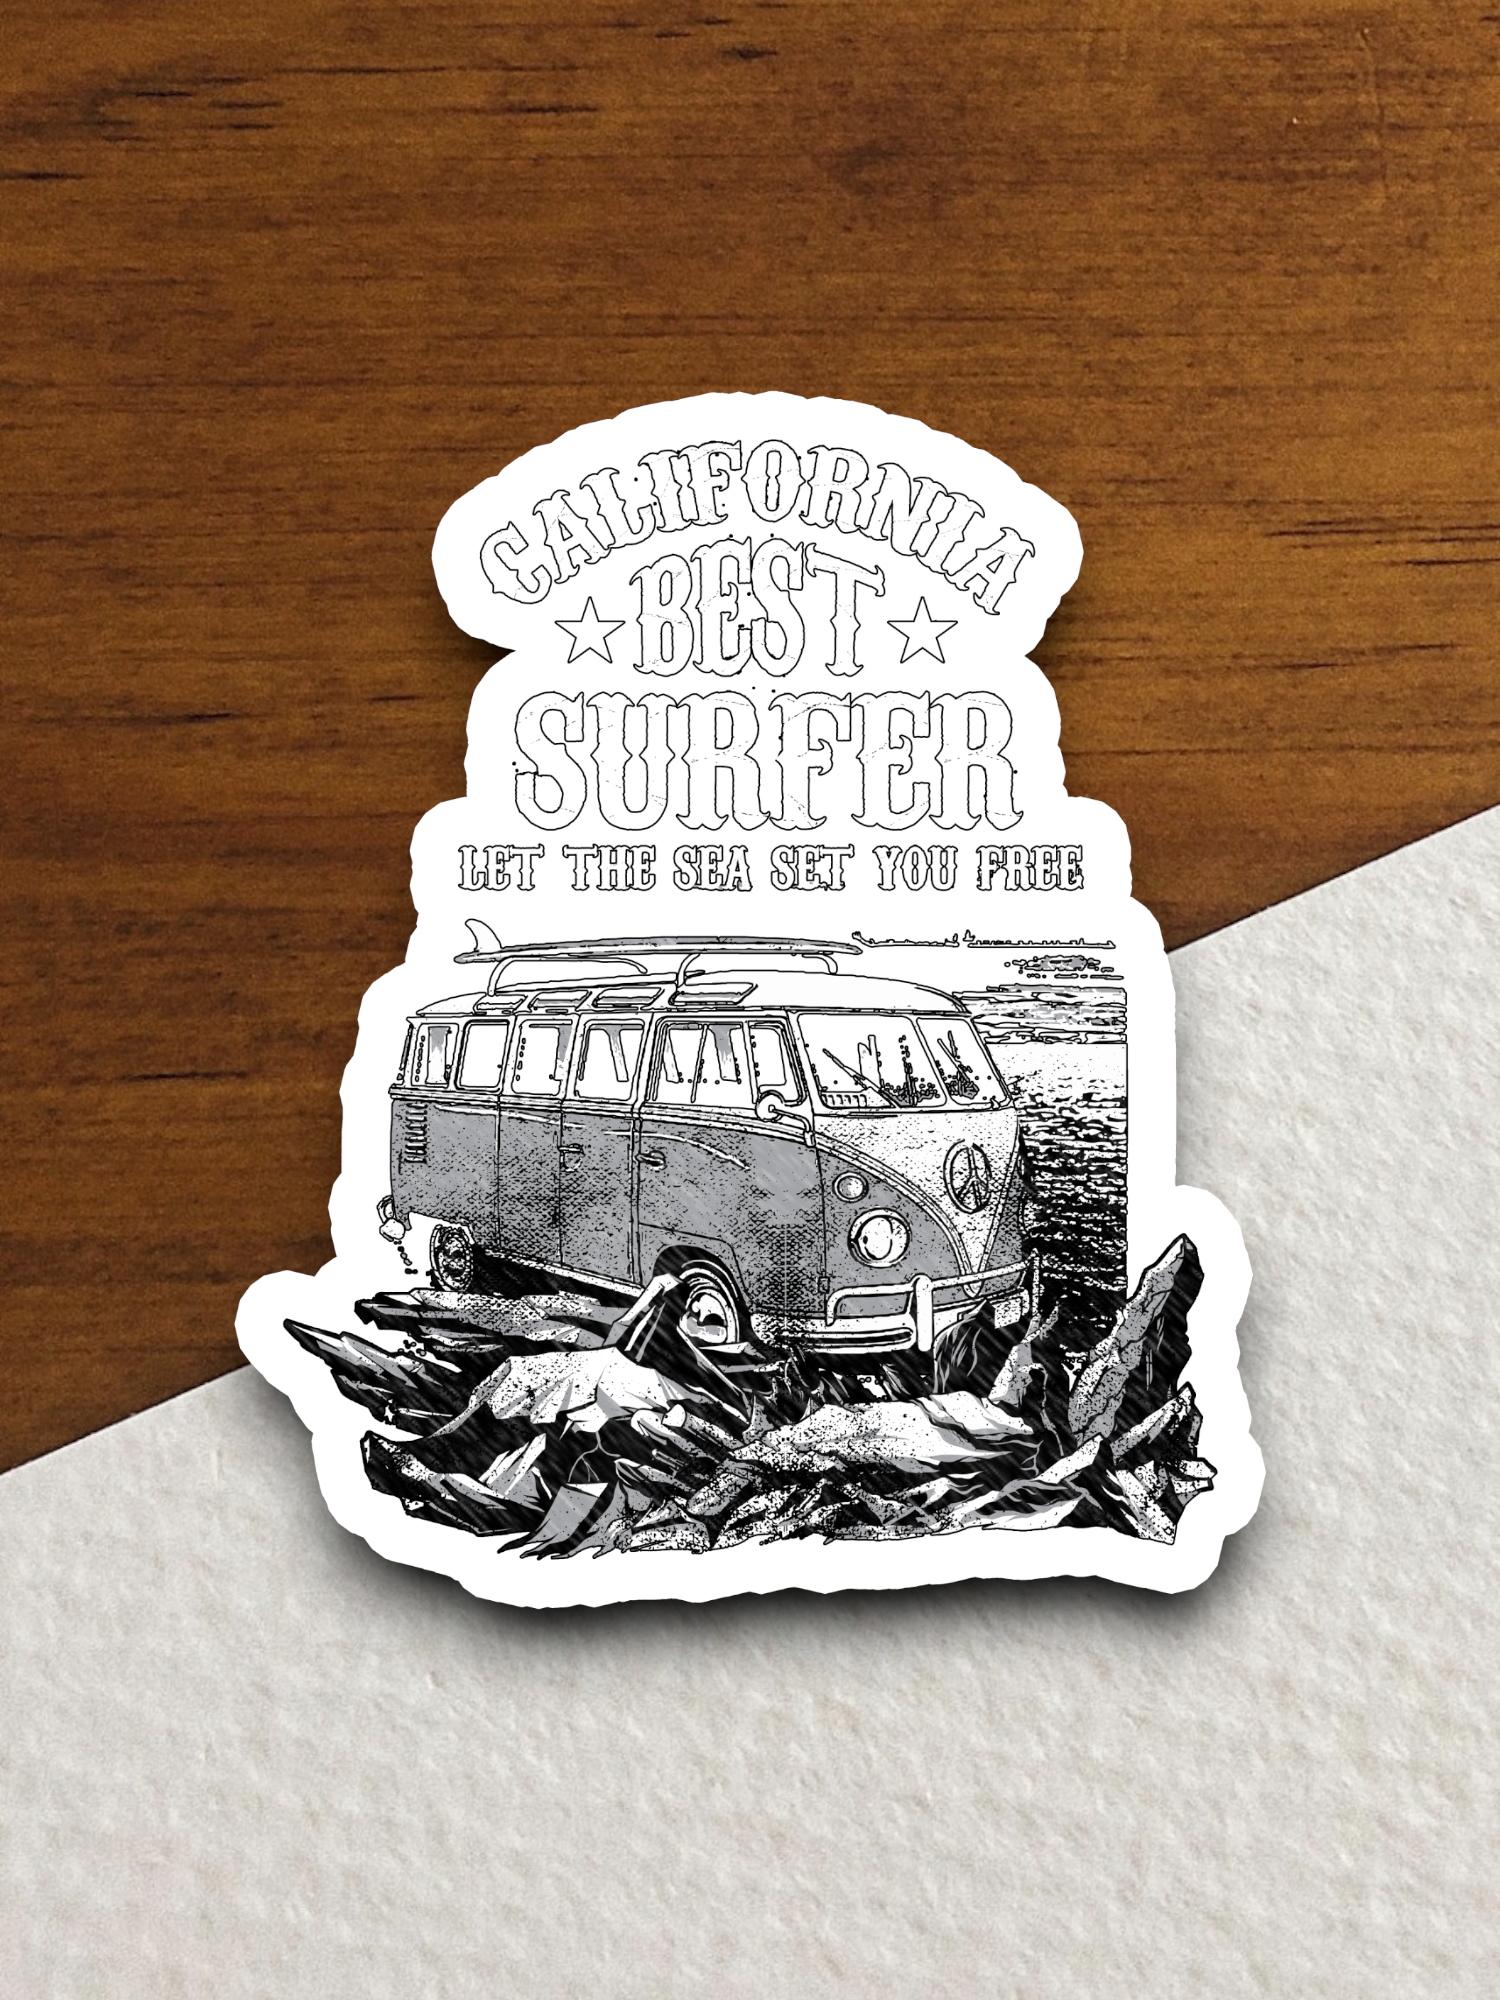 California Best Surfer Sticker